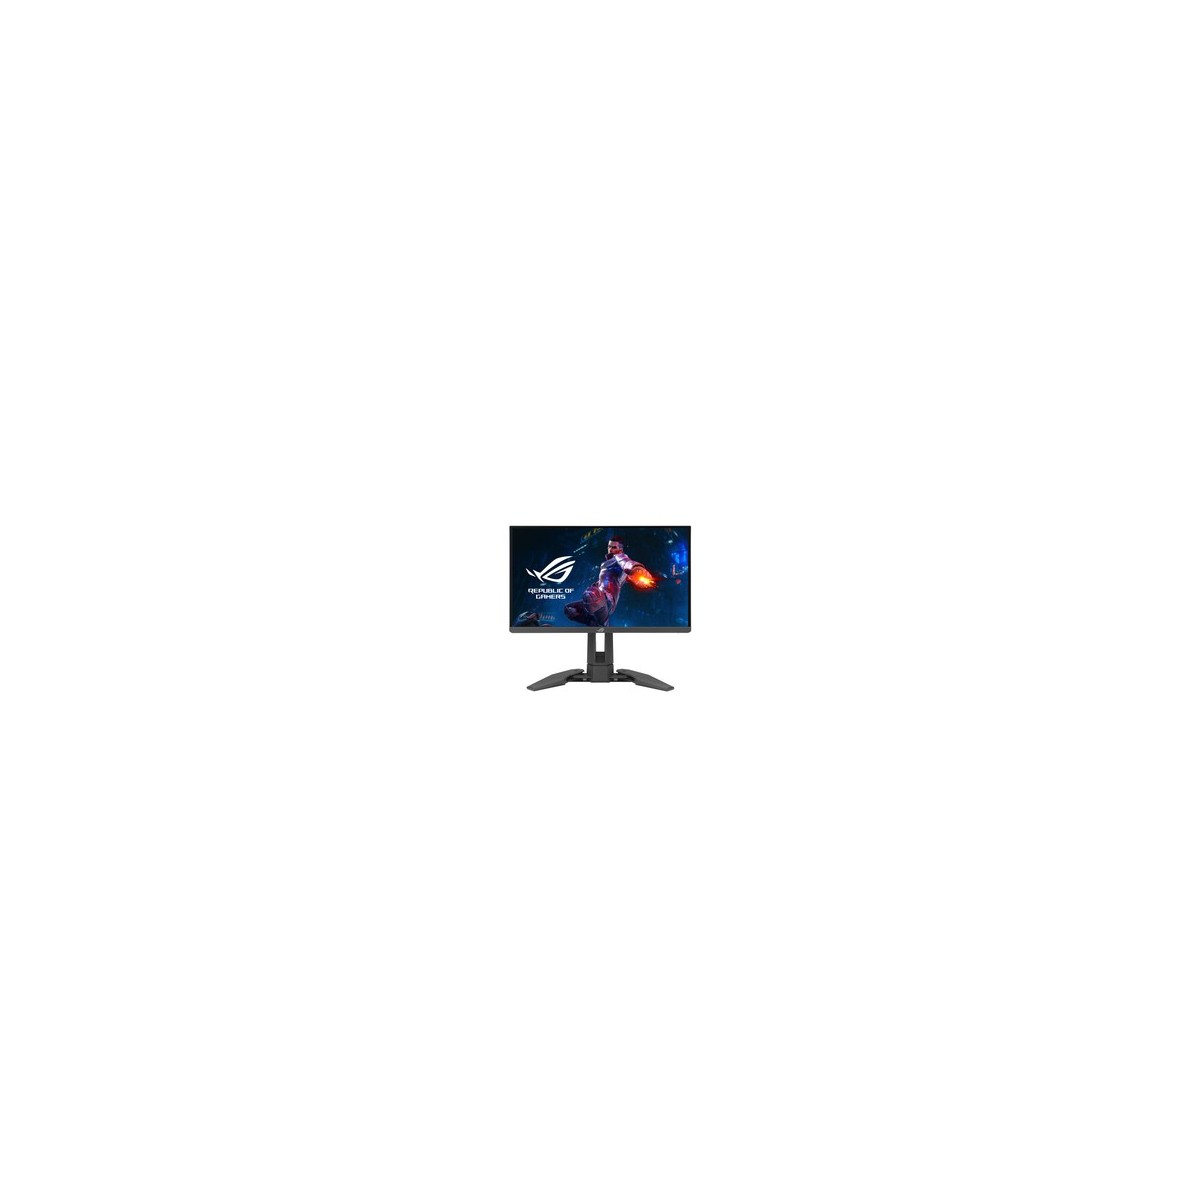 ASUS ROG Swift PG248QP 61.21cm (16:9) FHD HDMI DP - Flat Screen - 61.21 cm